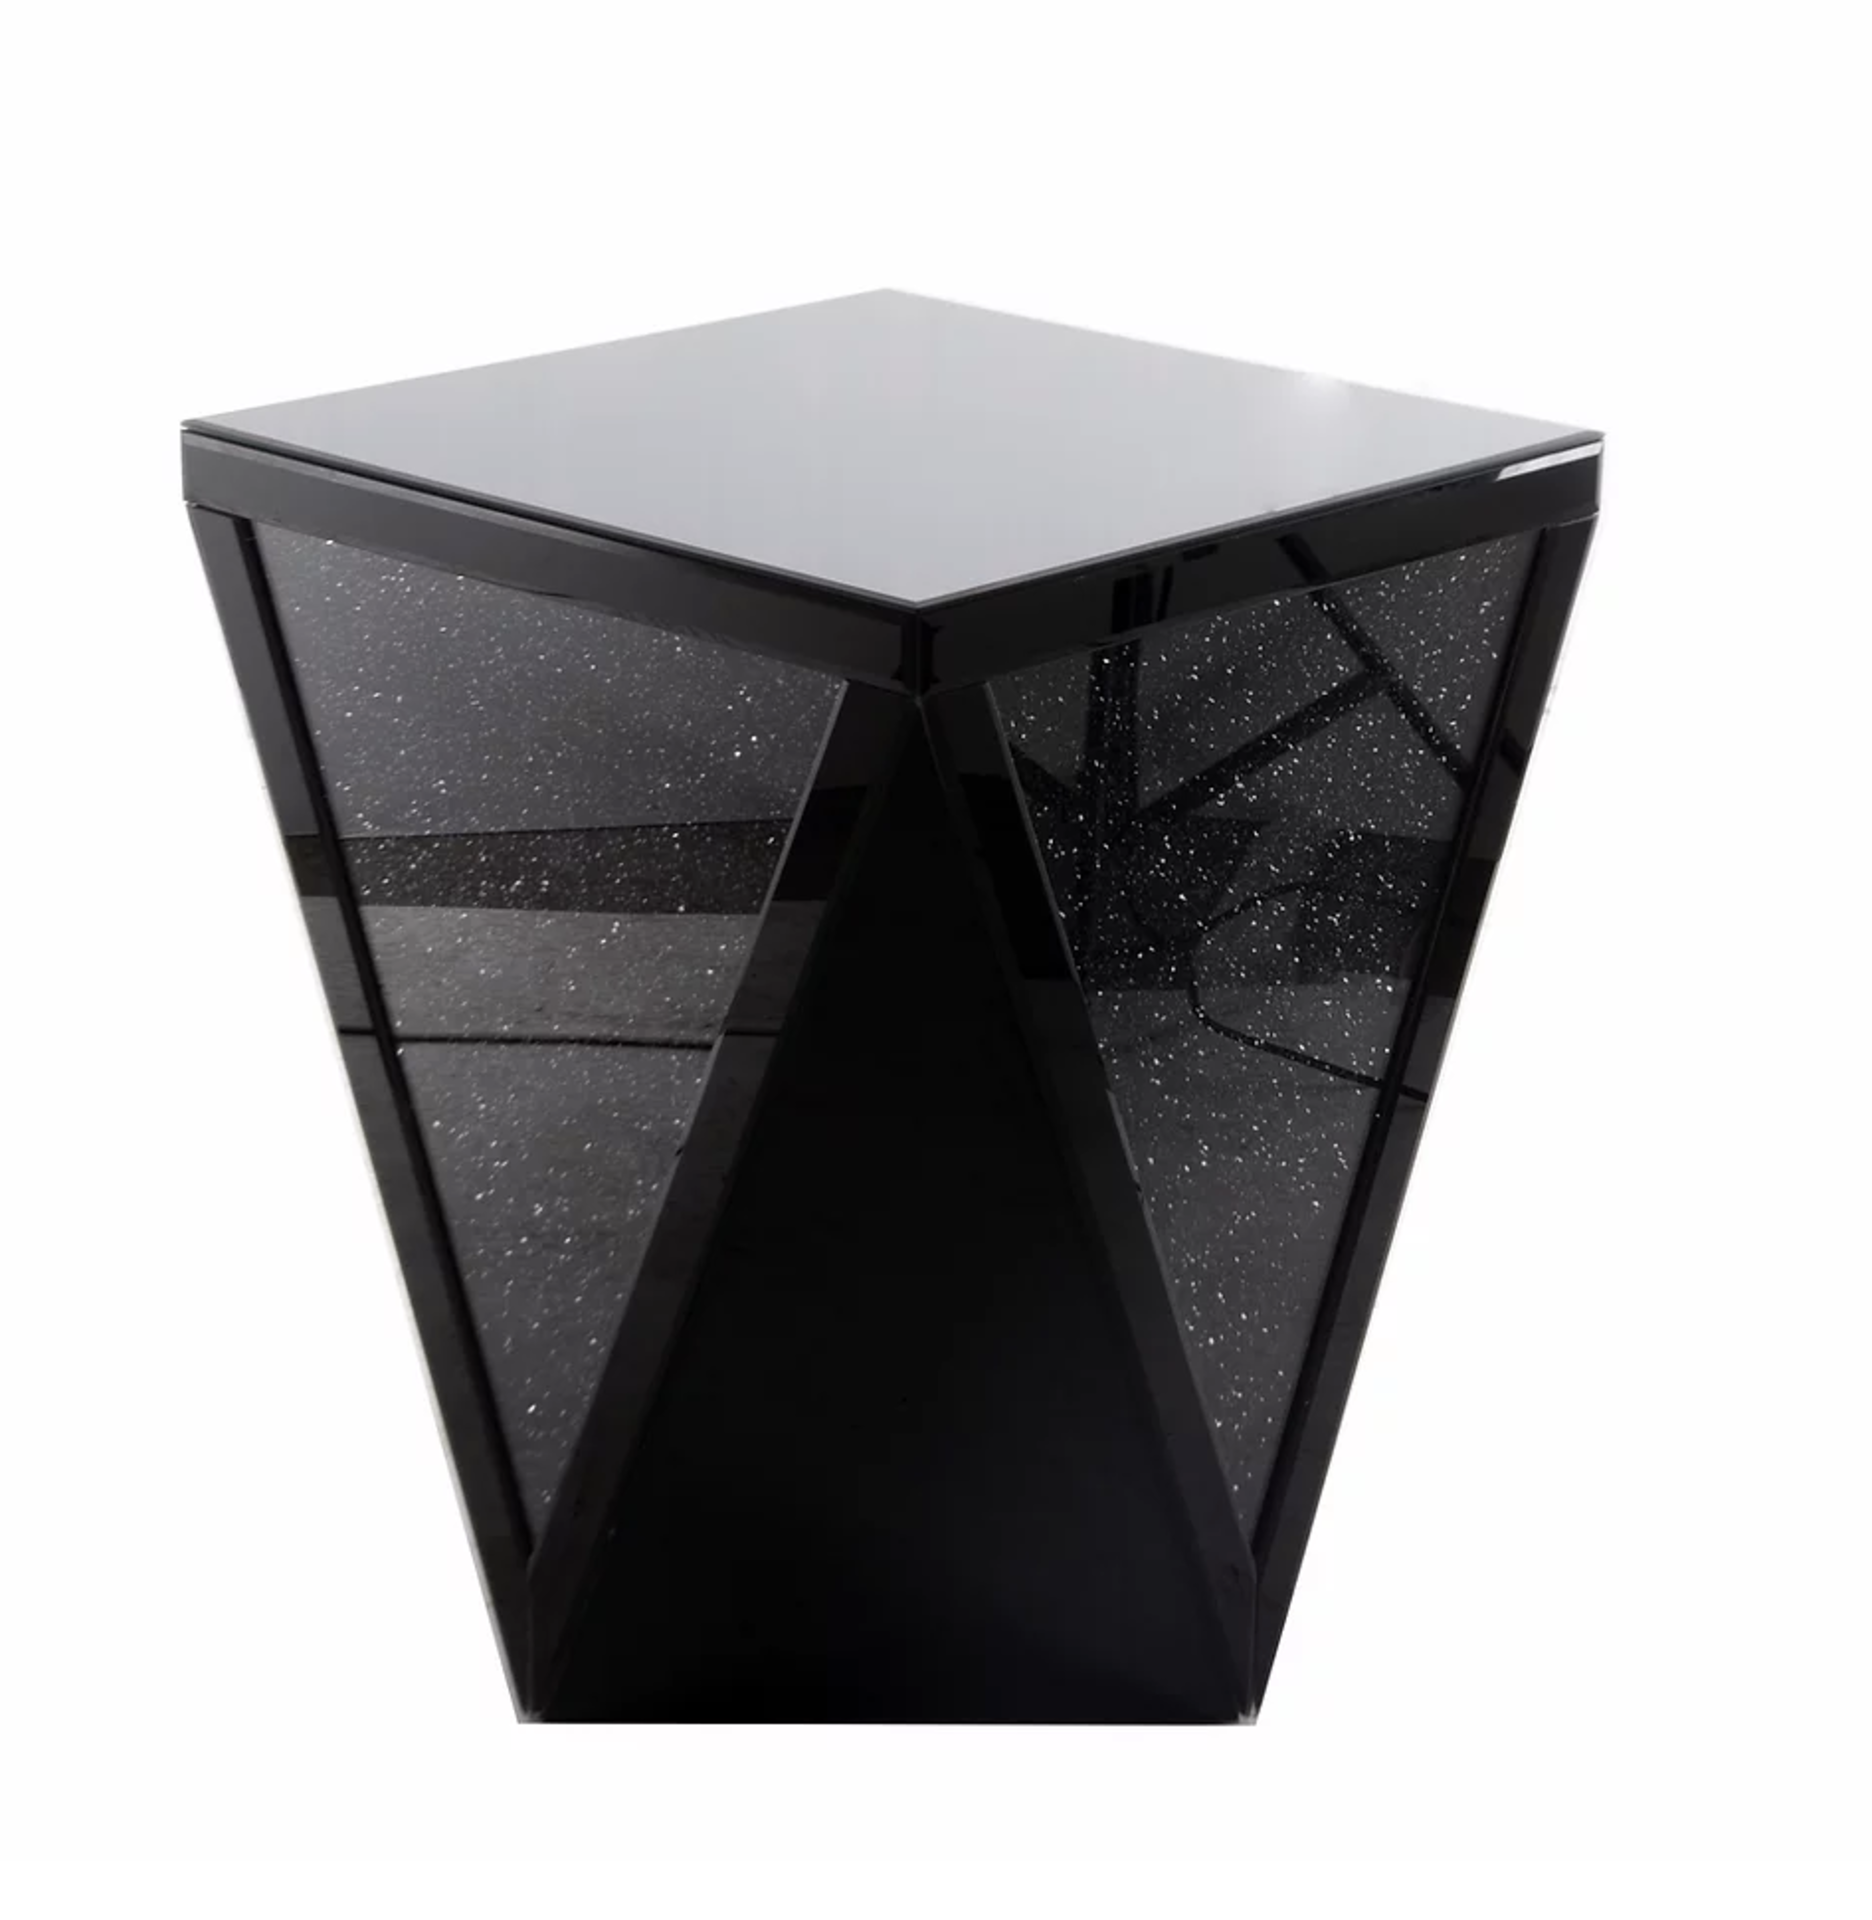 BRAND NEW BOXED BLACK MIRROR CRUSH V MIRRORED SIDE TABLE - 47.5X47.5X59CM (BOX 59X59X71, 18KG)